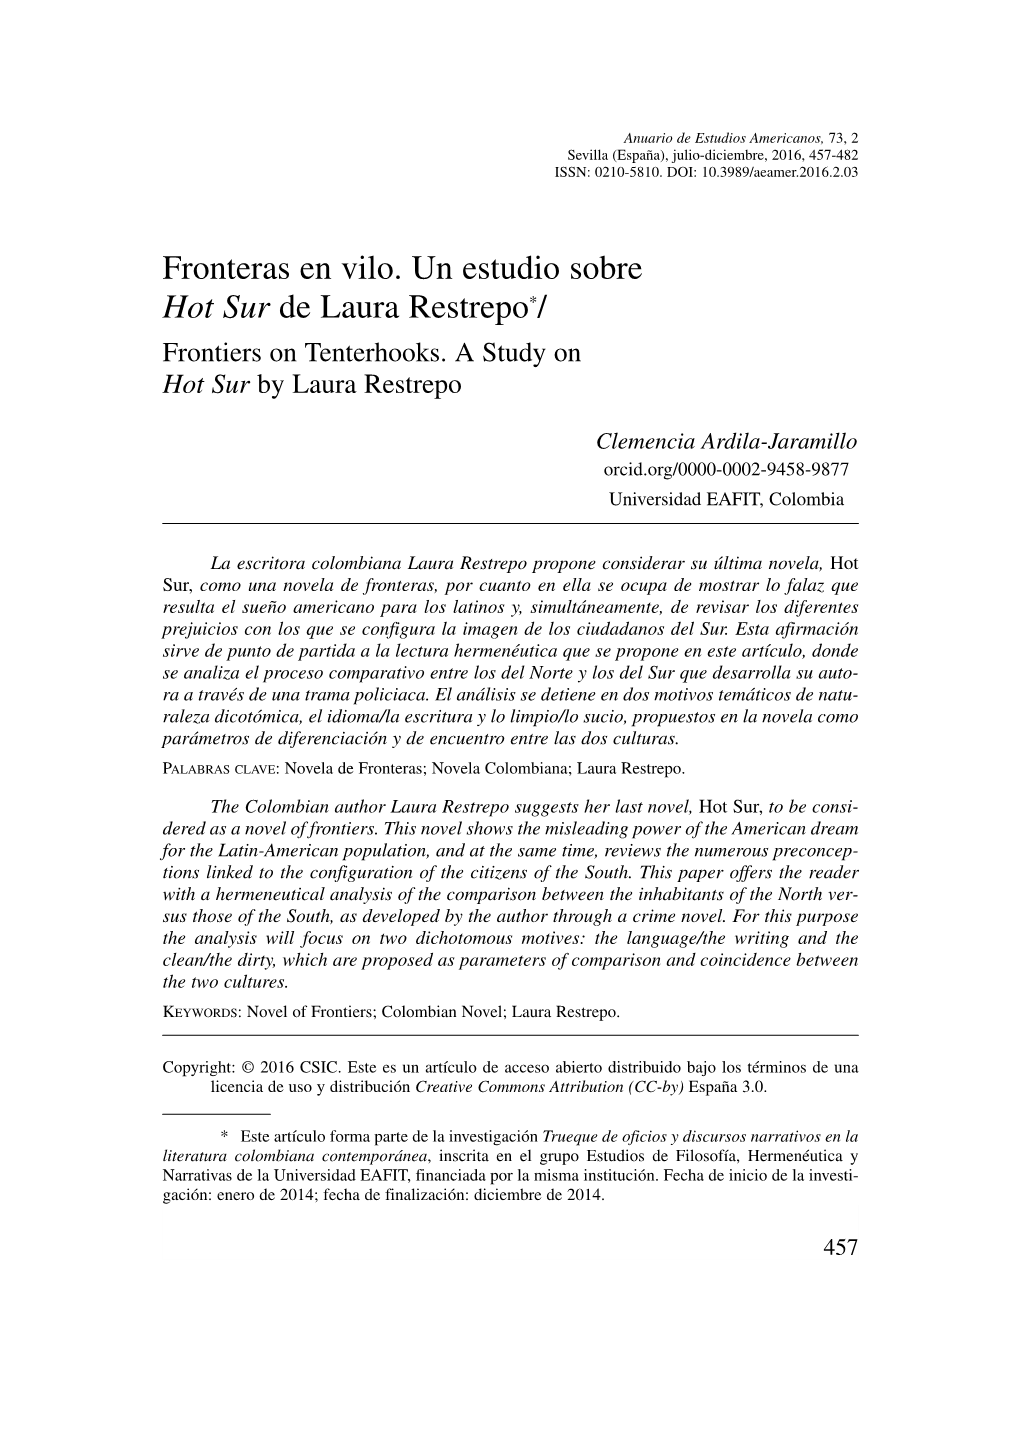 Fronteras En Vilo. Un Estudio Sobre Hot Sur De Laura Restrepo*/ Frontiers on Tenterhooks